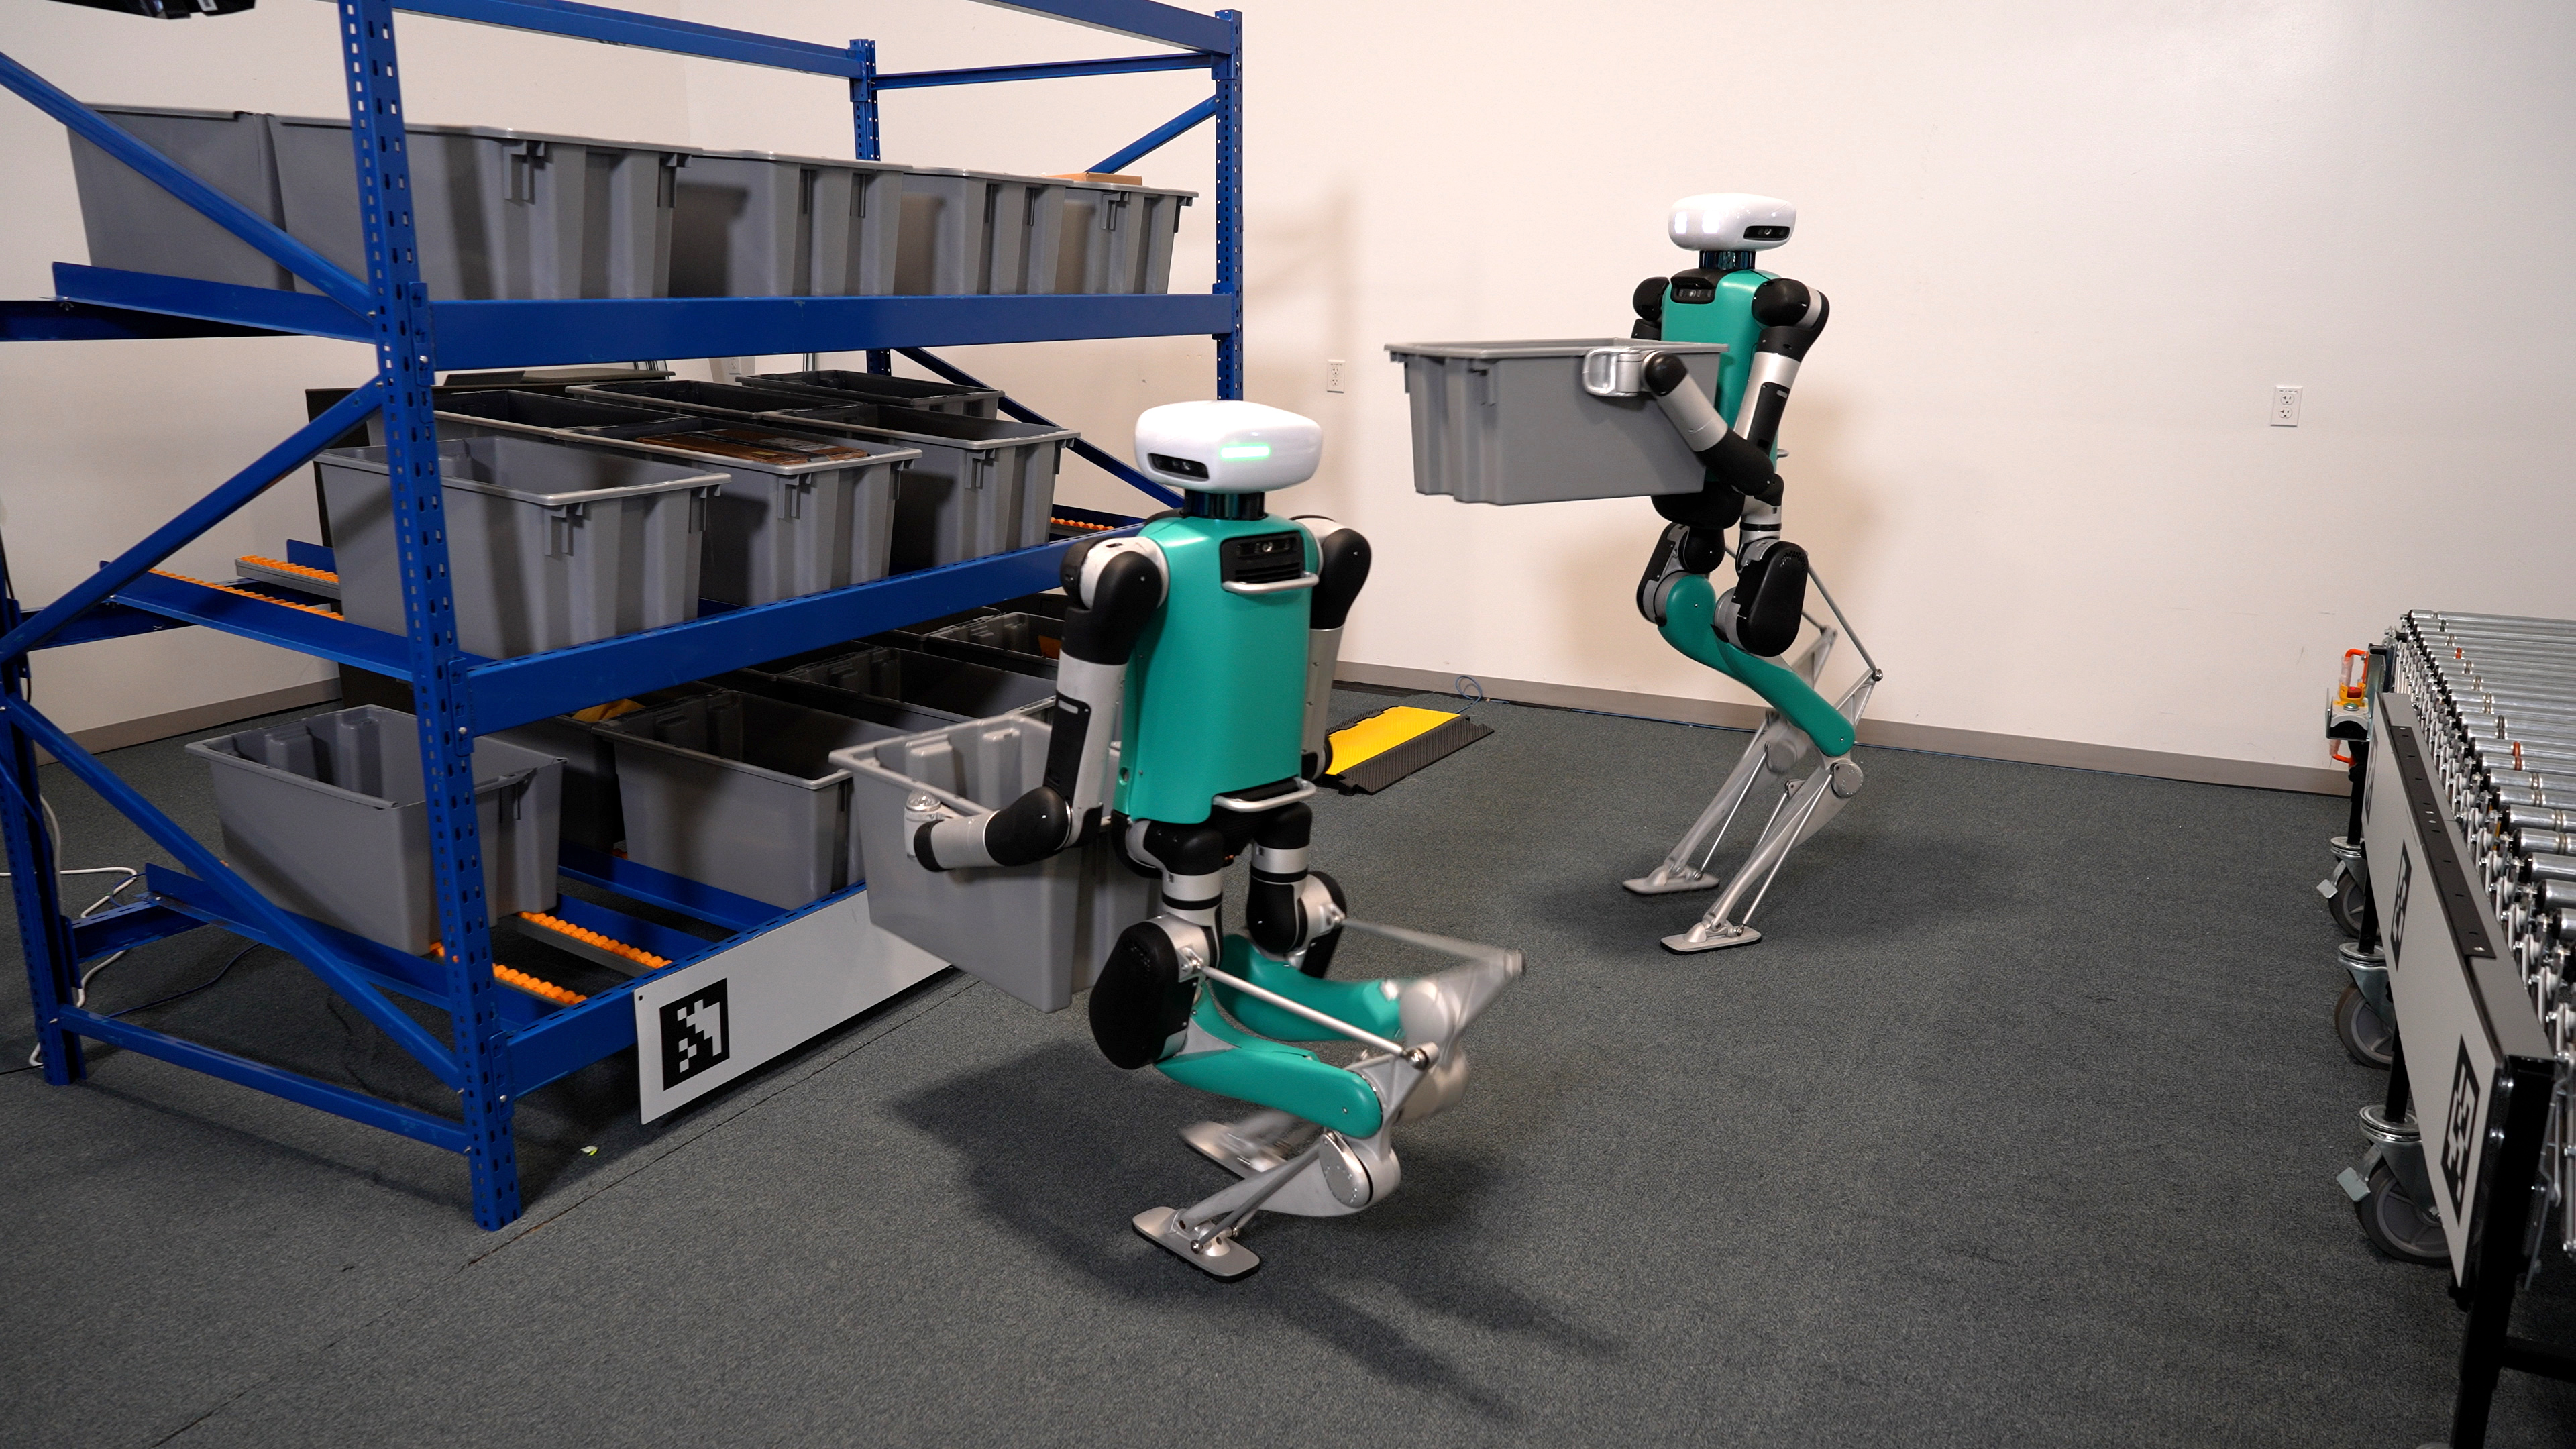 Next robot. Digit от Agility Robotics. Промышленный робот с видеокамерой. Американская робототехника. Робот гуманоид.